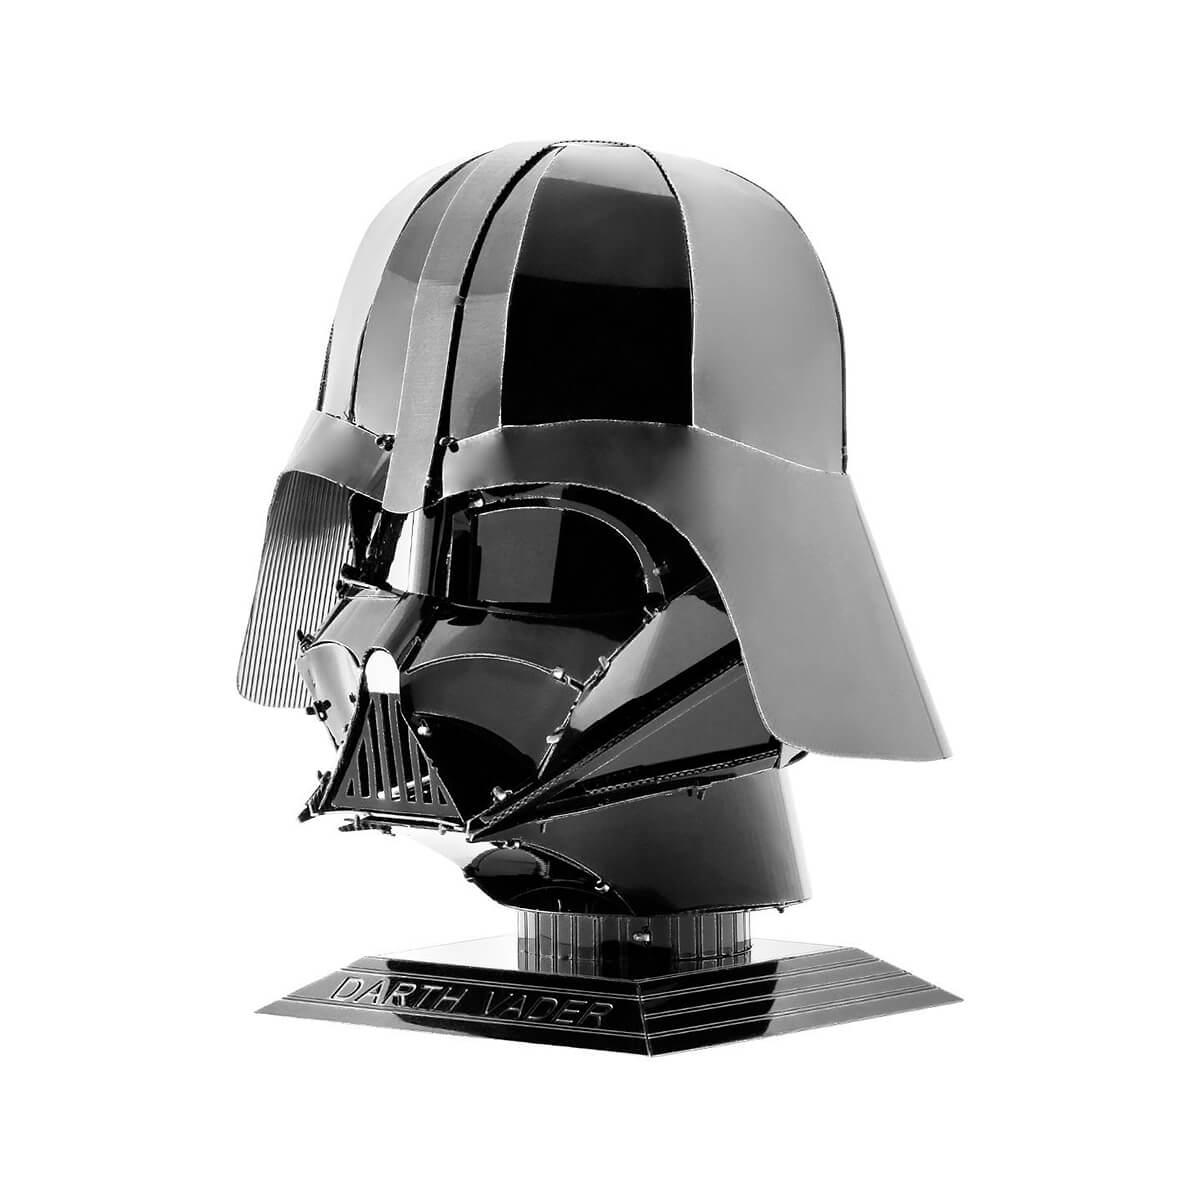  Star Wars Darth Vader Helmet Model Craft Kit